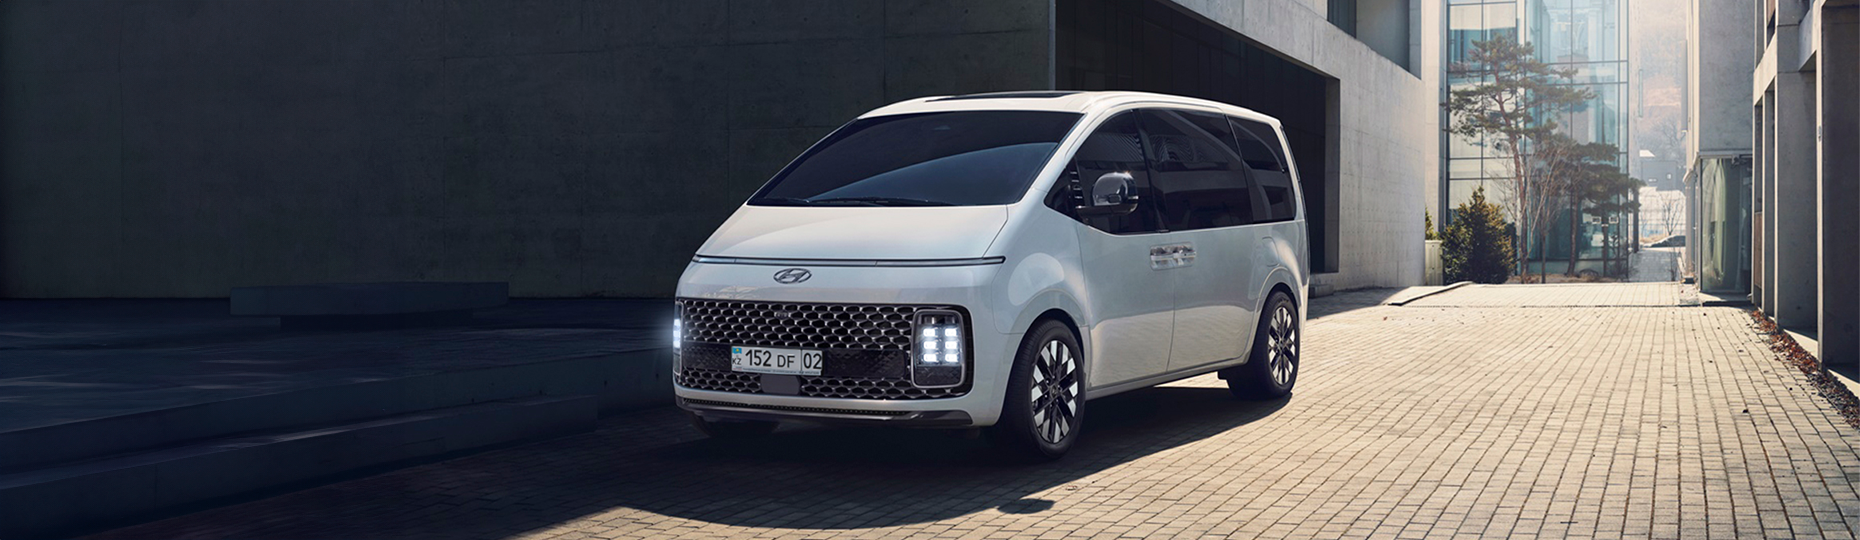 Купить новый Hyundai Staria 2022-2023 у официального дилера в Караганде